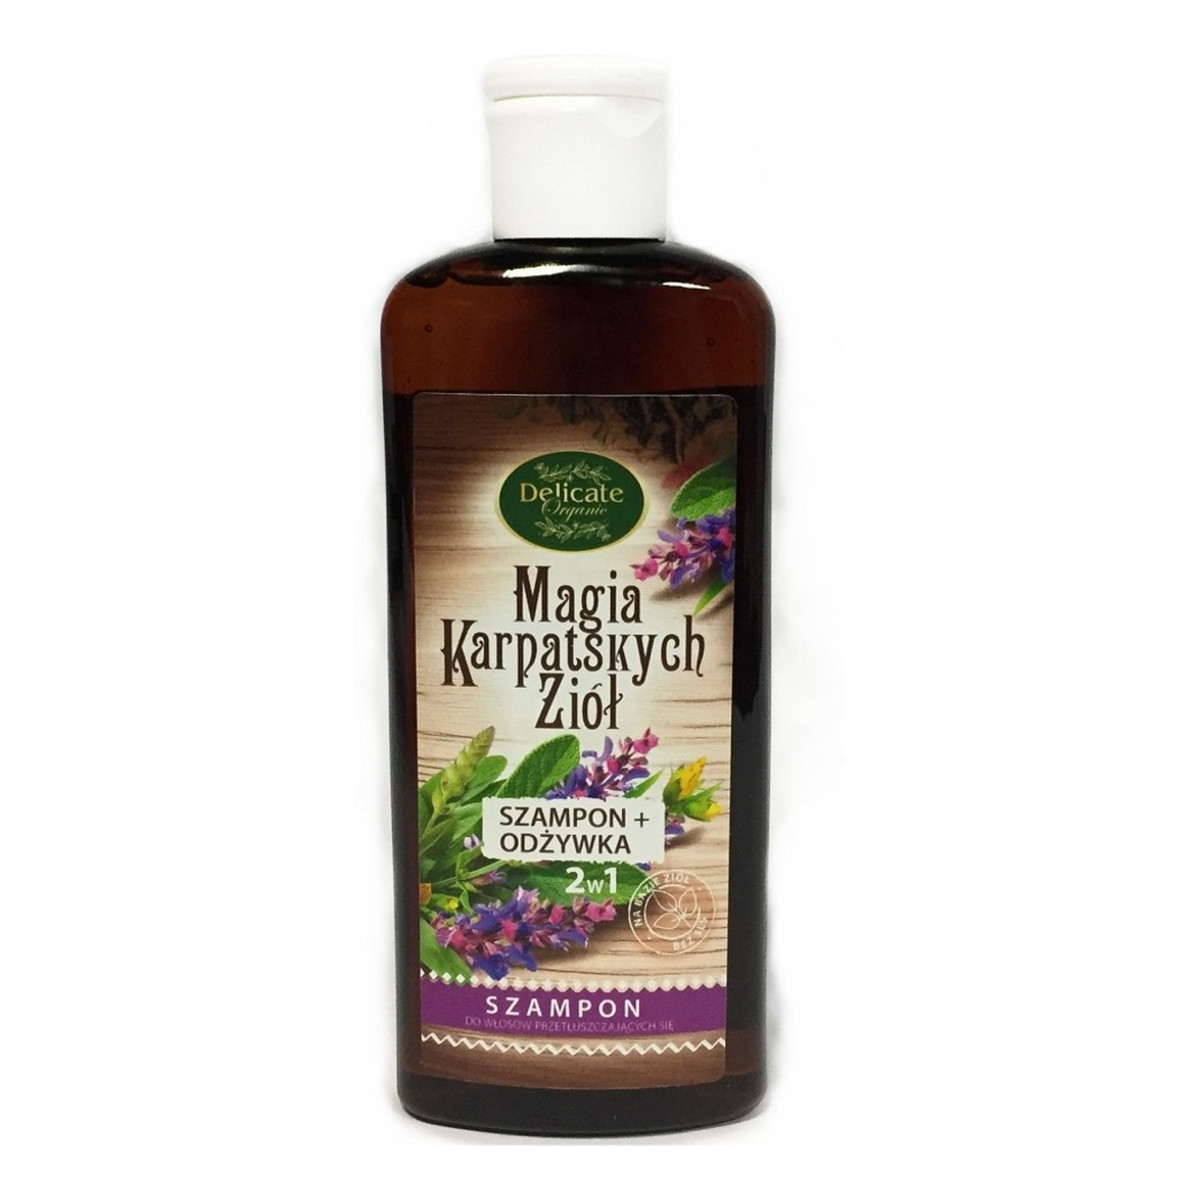 Delicate Organic Magia Karpackich Ziół szampon do włosów przetłuszczających się 250g